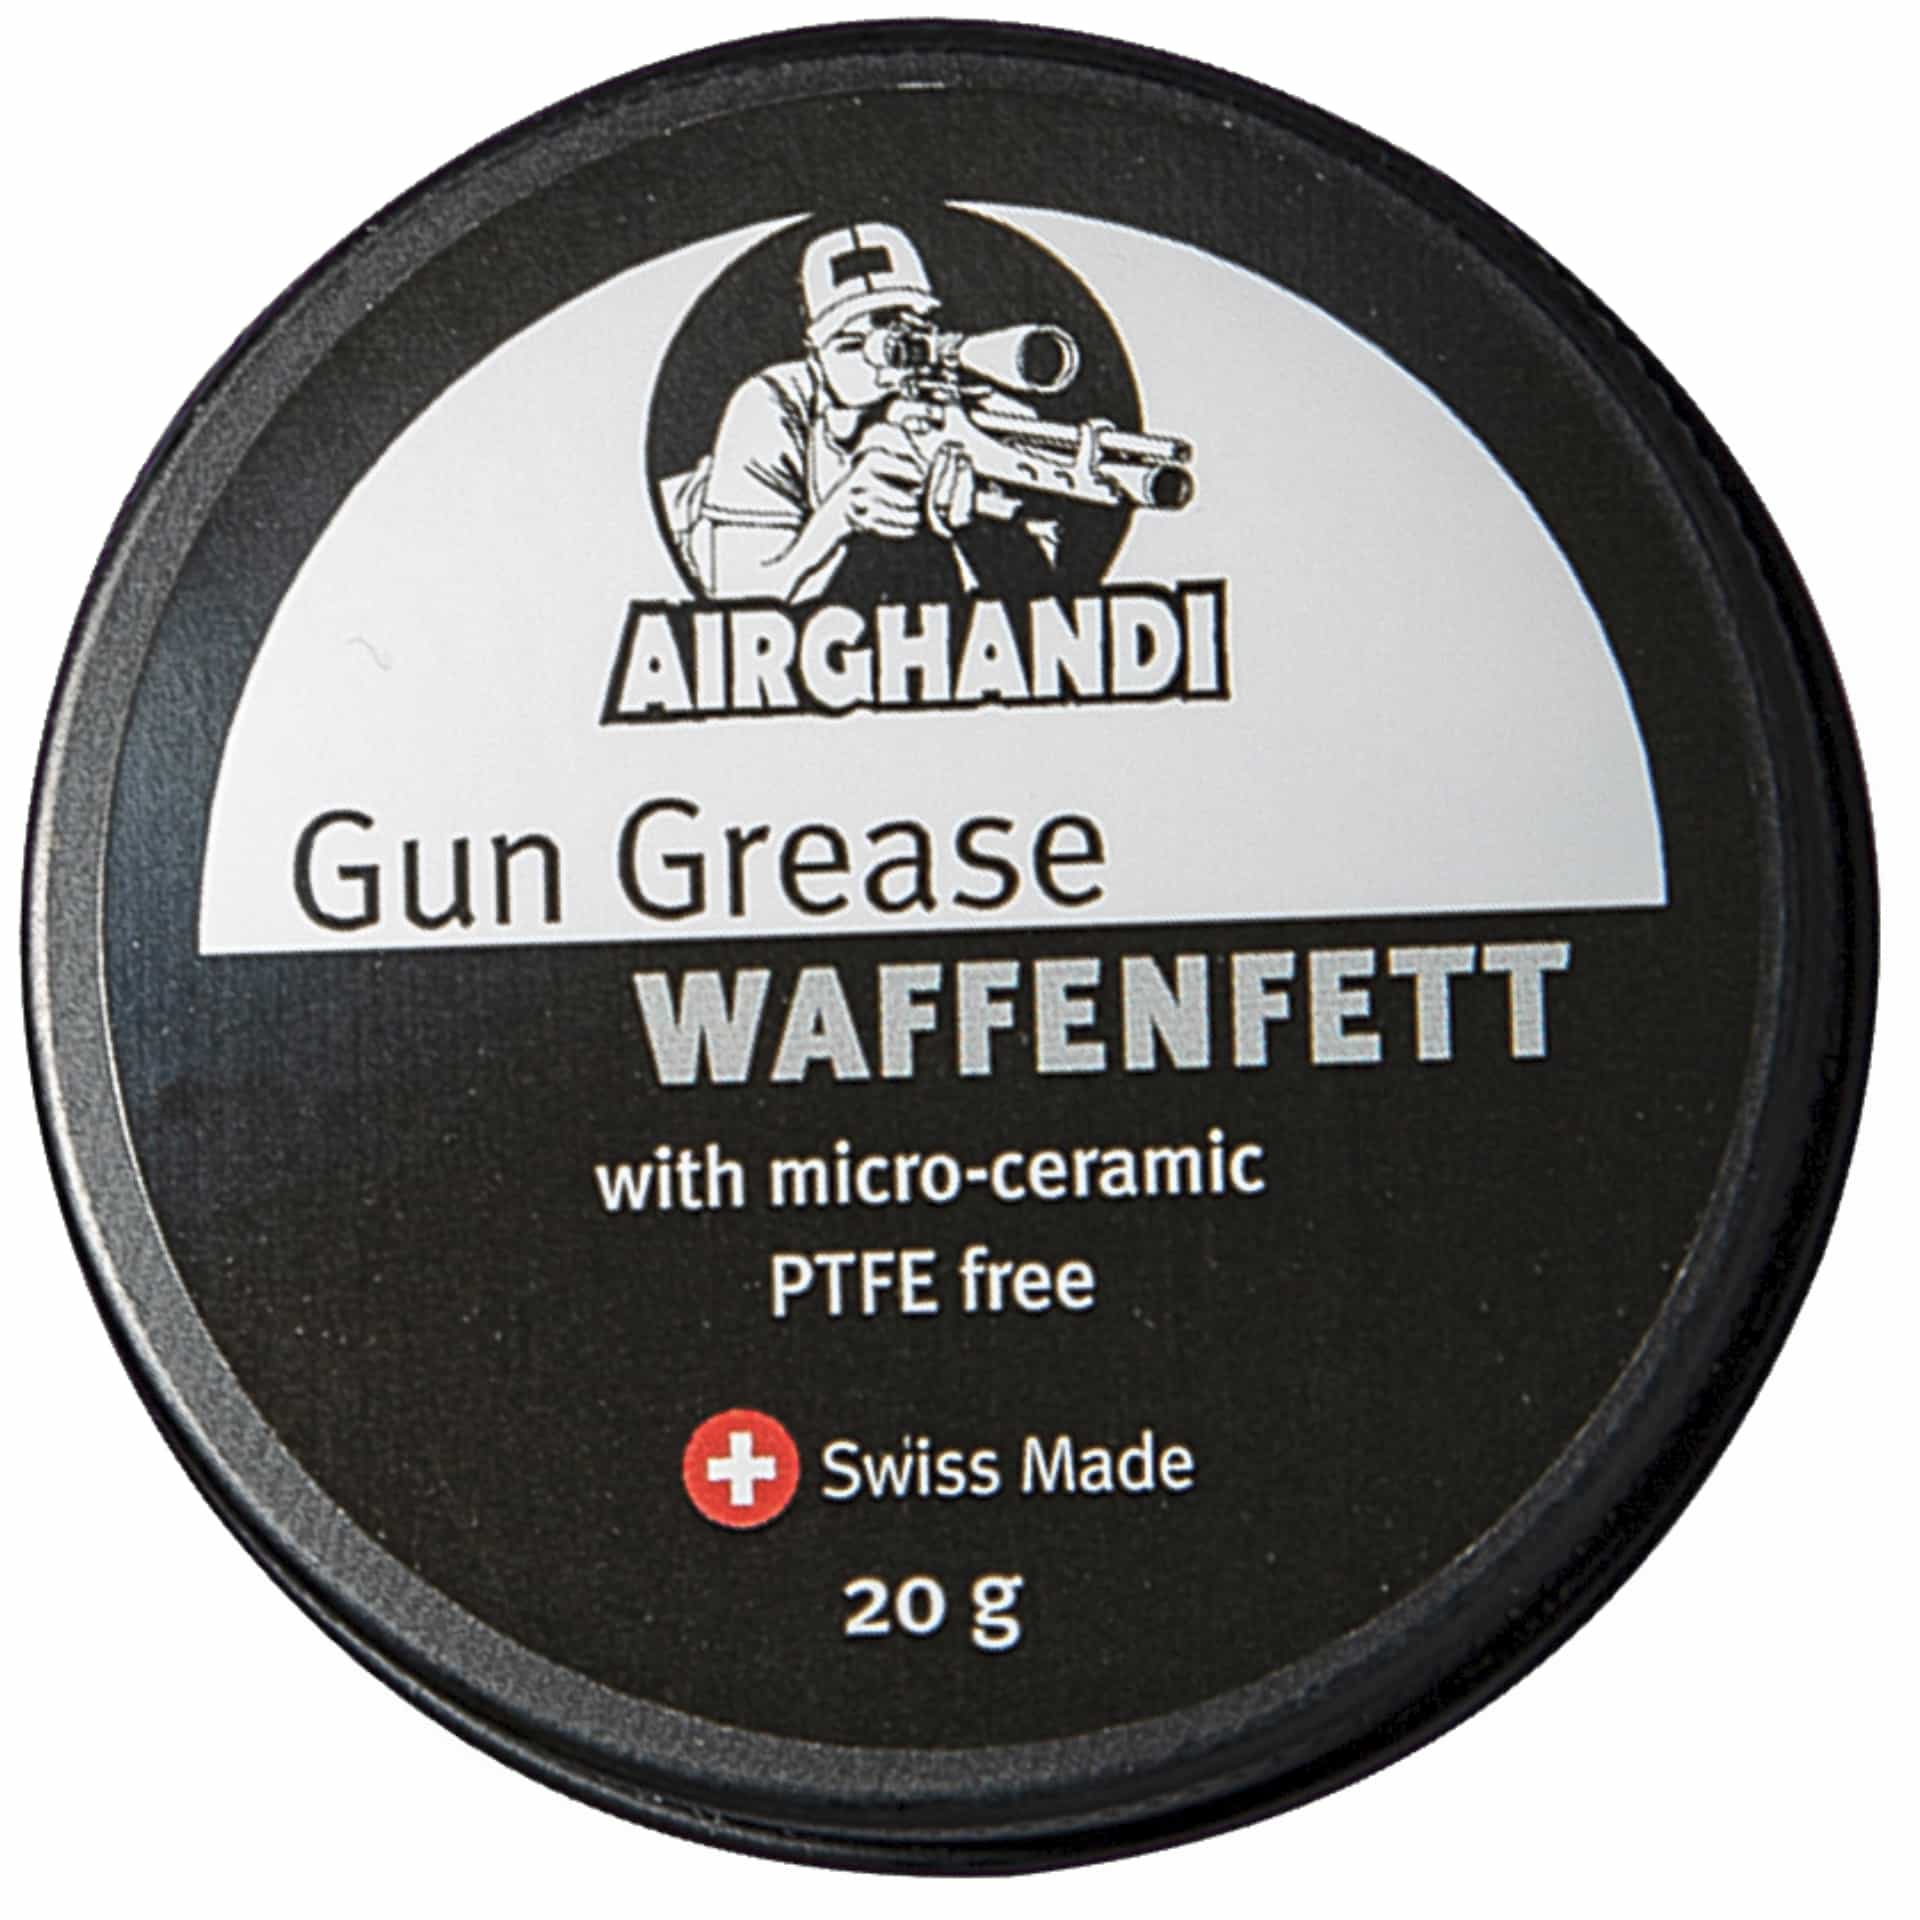 AirGhandi's Gun Grease